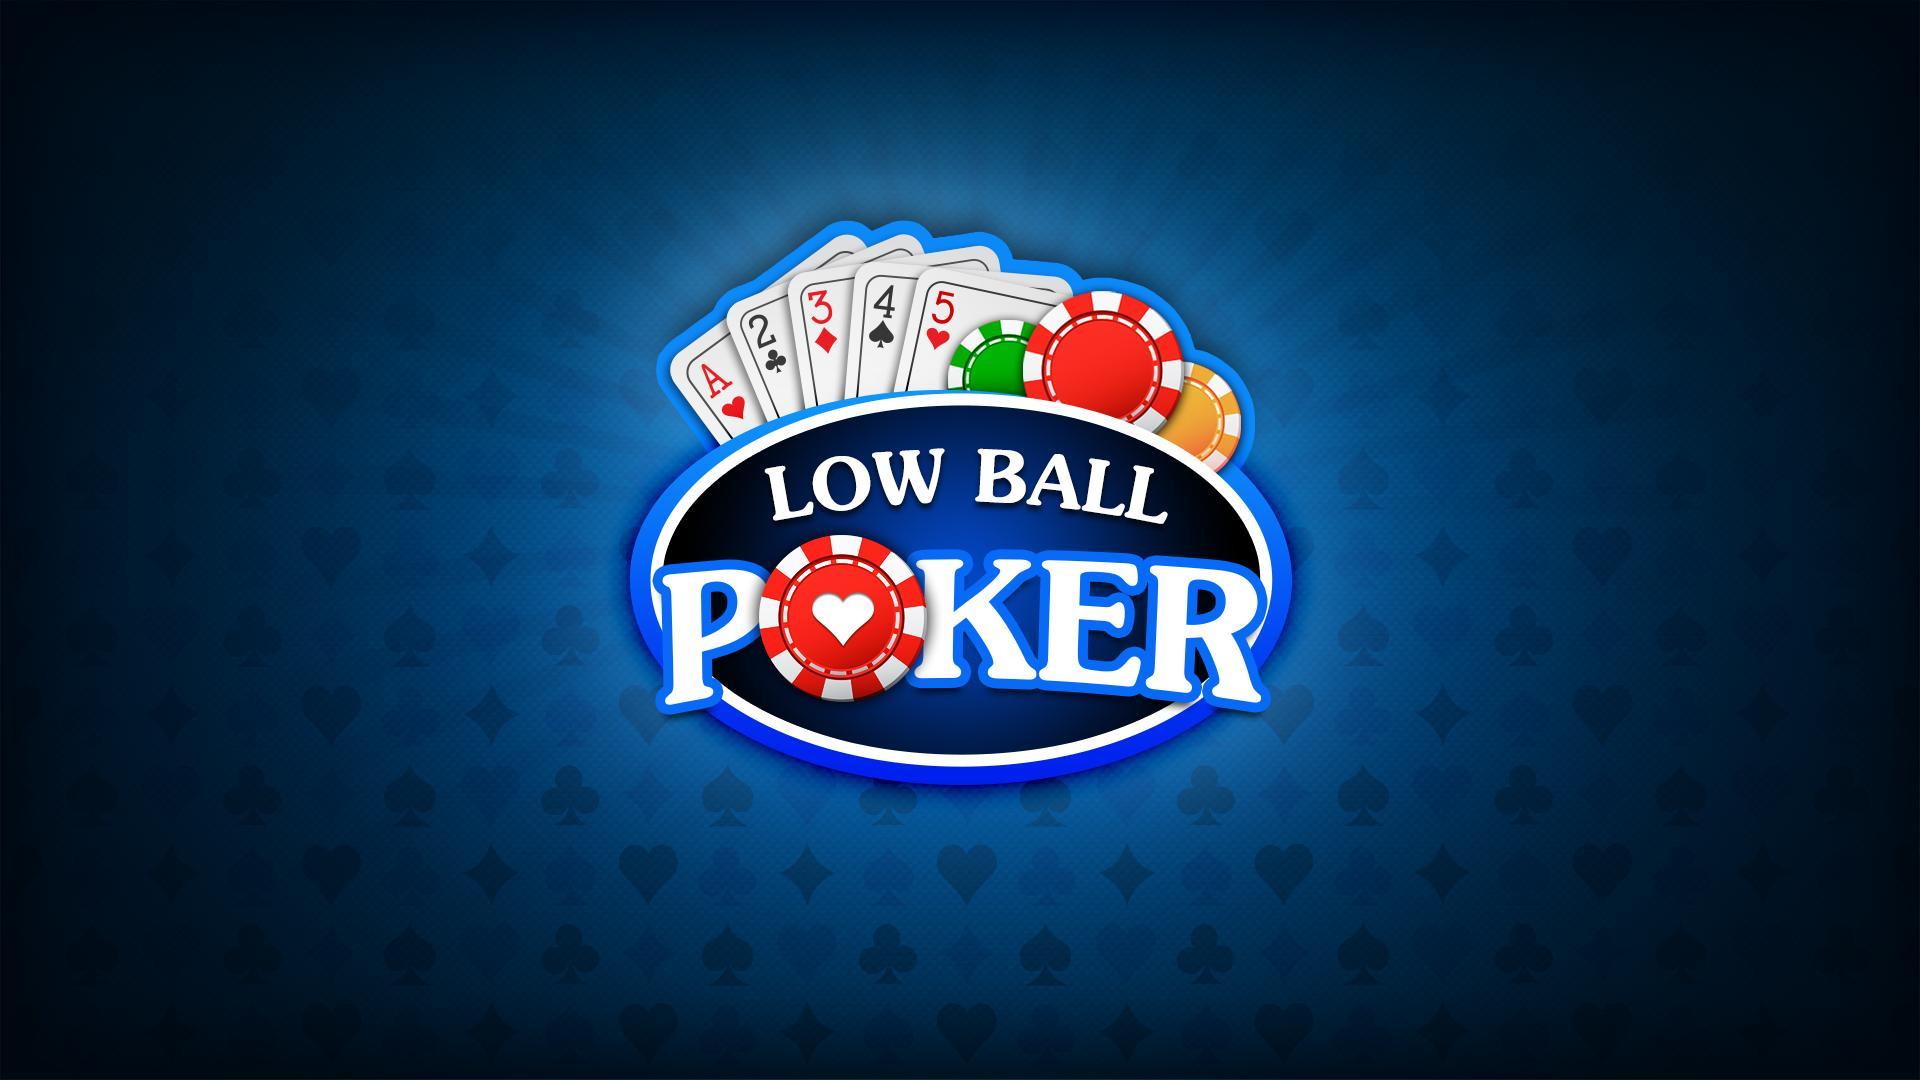 Лоуболл Покер. Лоуболл. Lowball. Pocker Low. Low ball